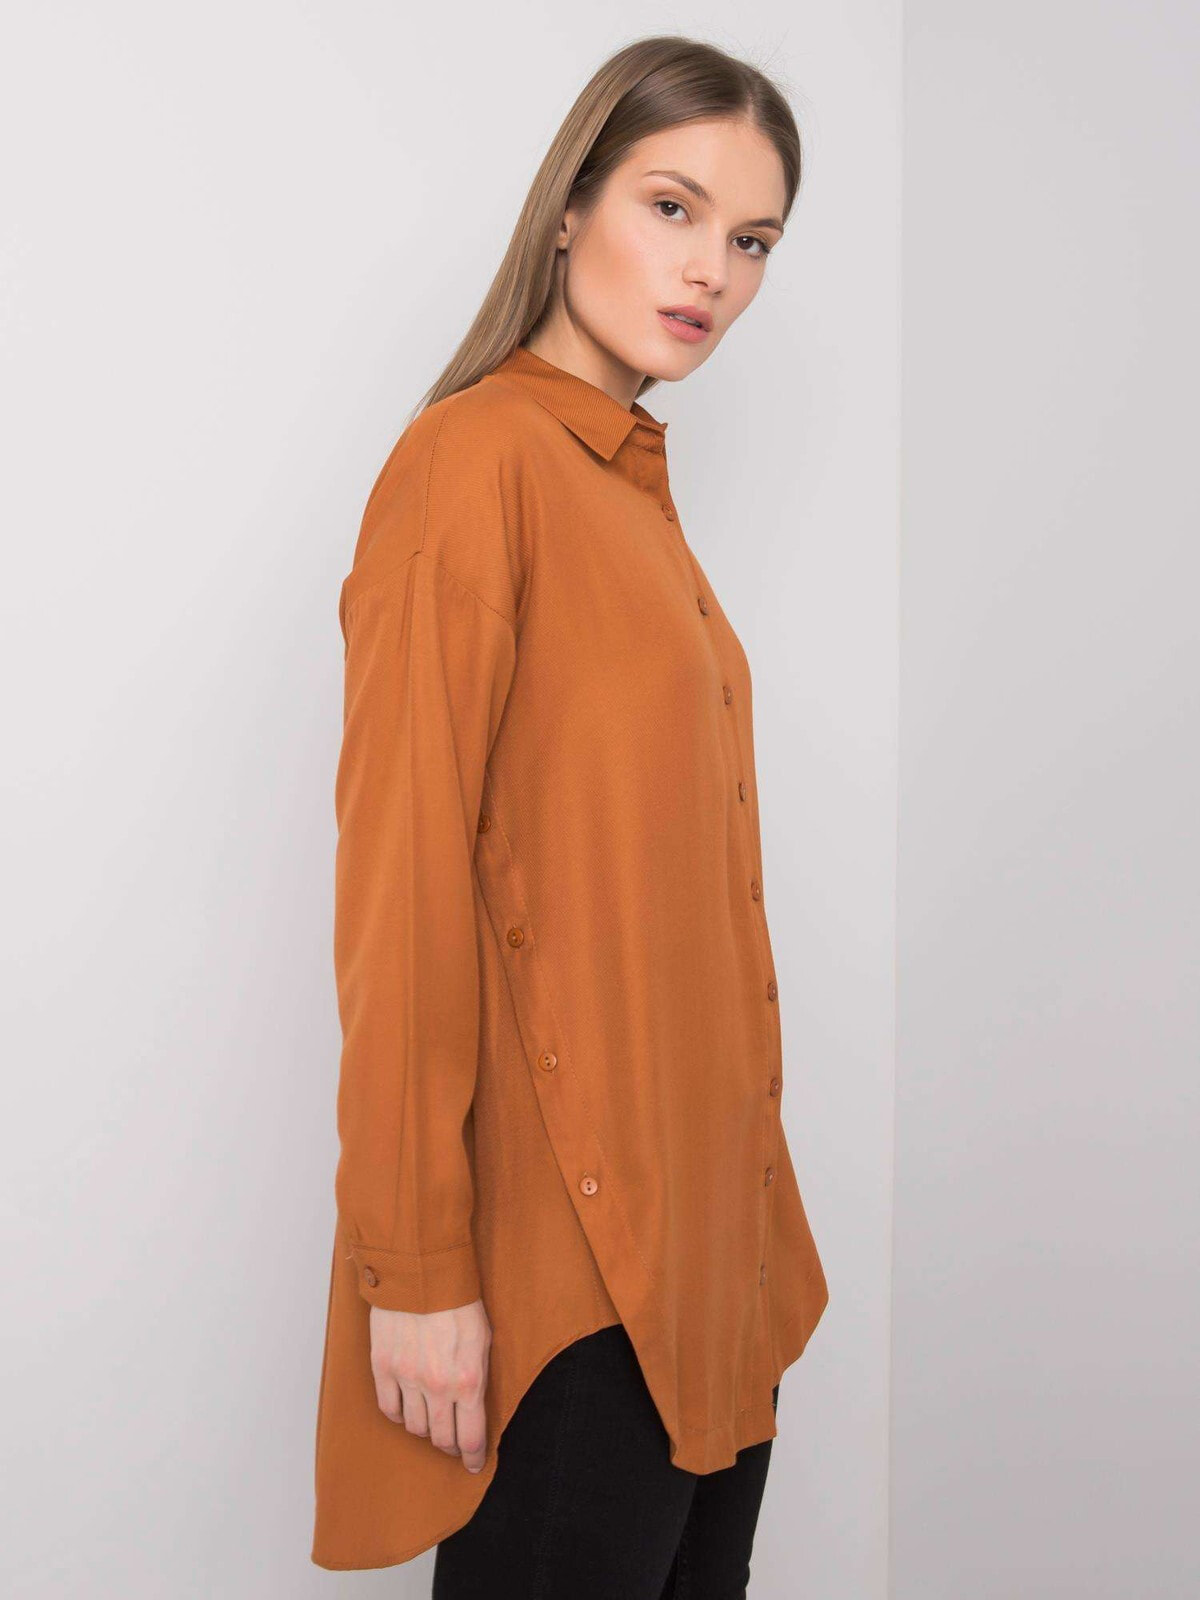 Женская удлиненная рубашка свободного кроя с длинным рукавом коричневая Factory Price